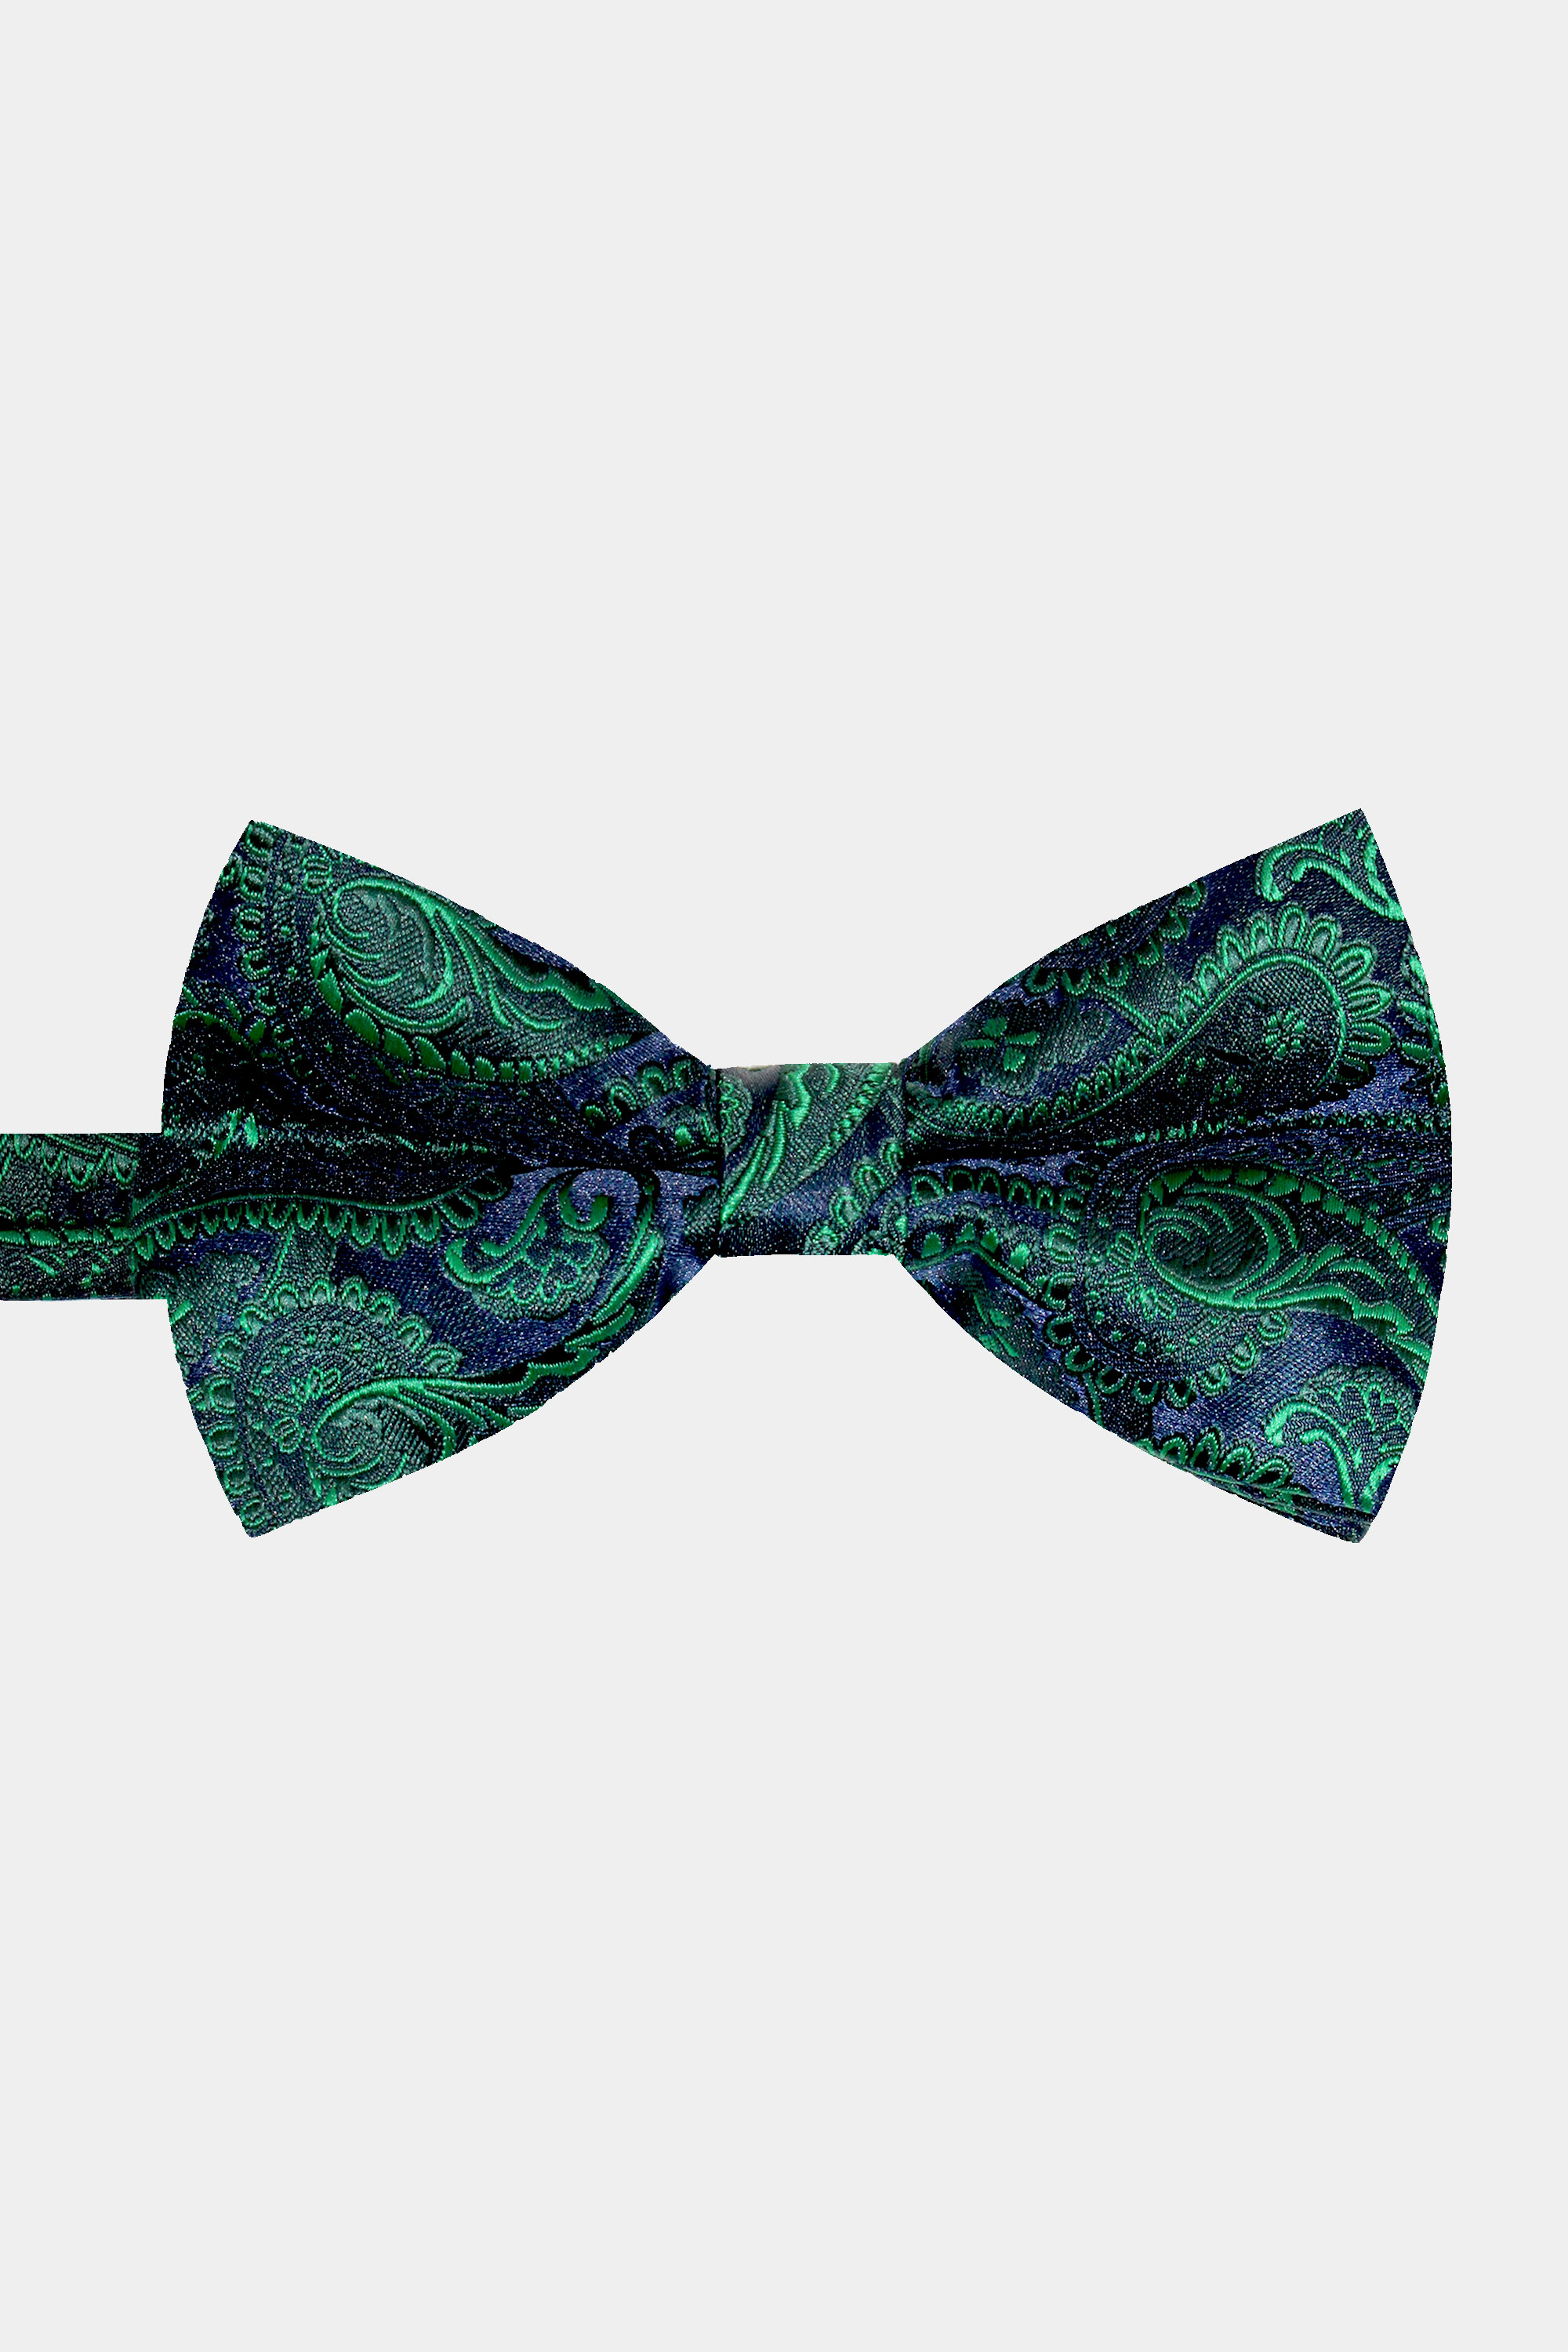 Emerald-Green-Paisley-Bow-Tie-from-Gentlemansguru.com